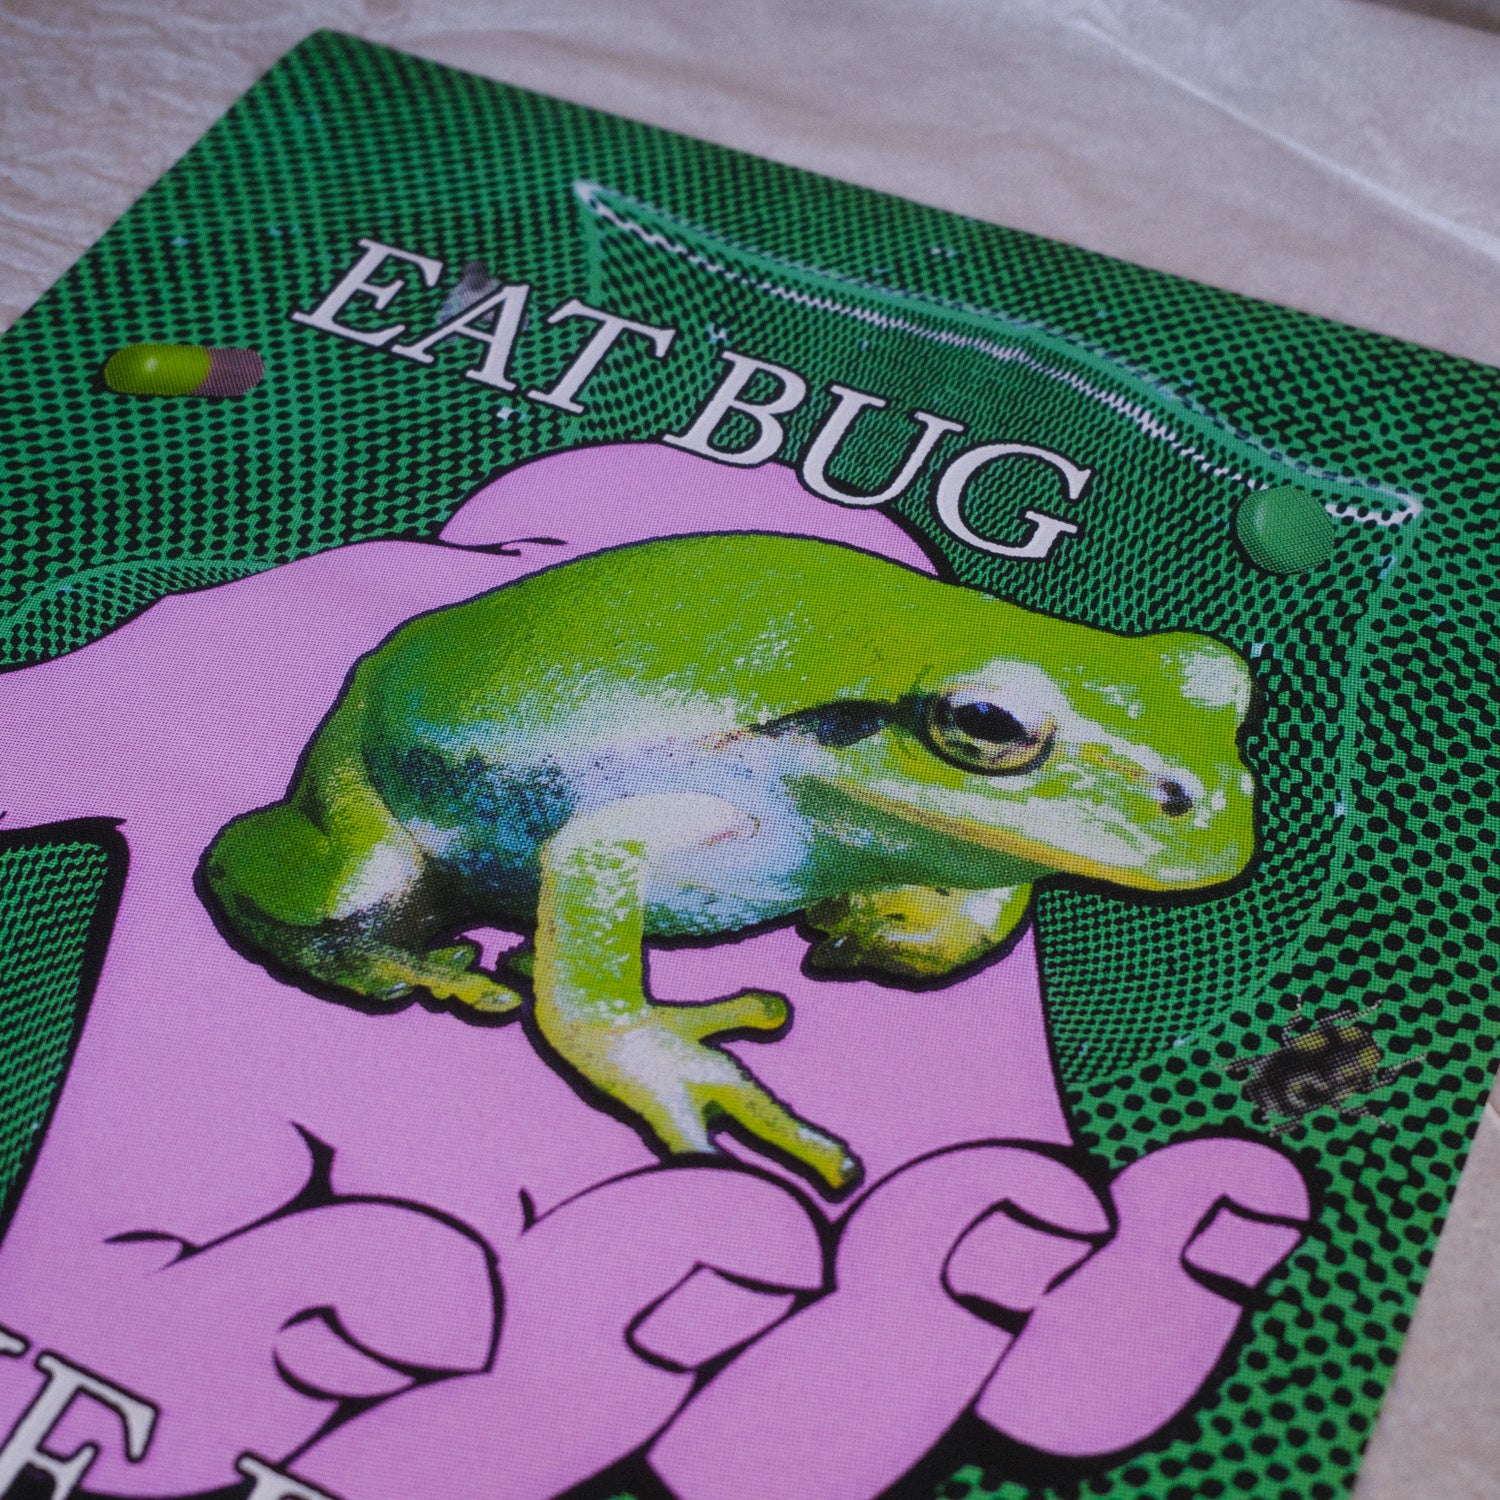 eat bug